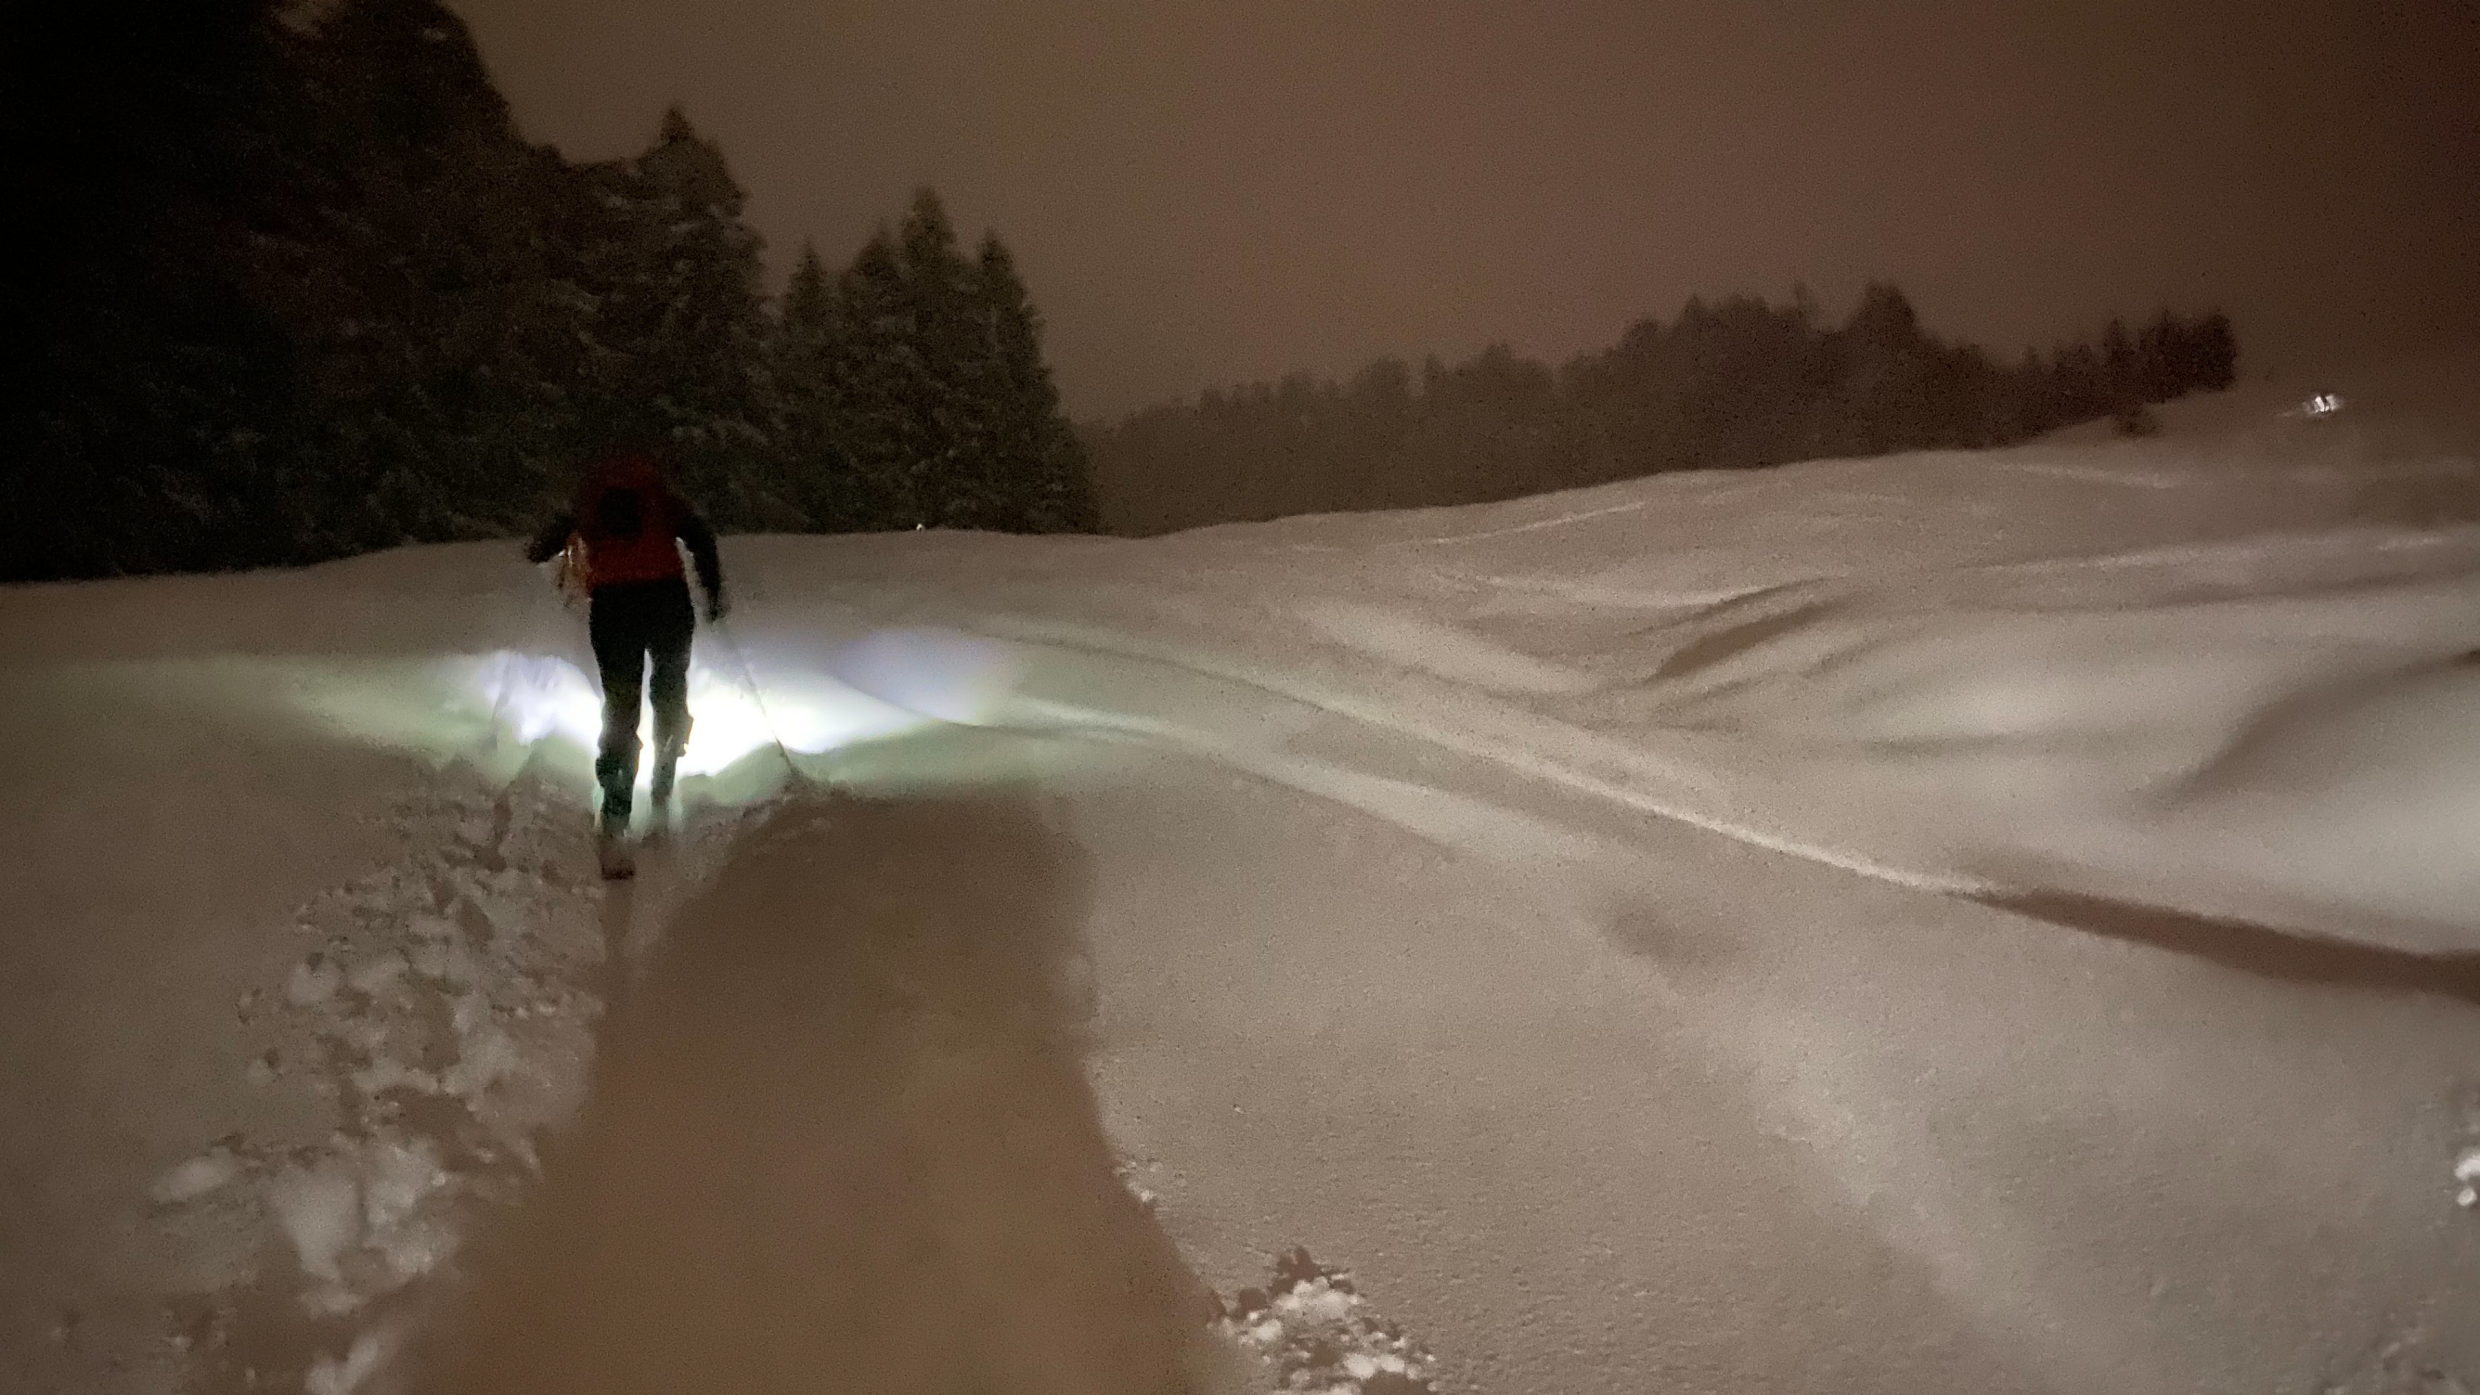 Berg+Ski: Aufstieg zum Tanzboden bei Vollmond (und leider etwas Nieselregen – für nächstes Jahr ist besseres Wetter bestellt!)